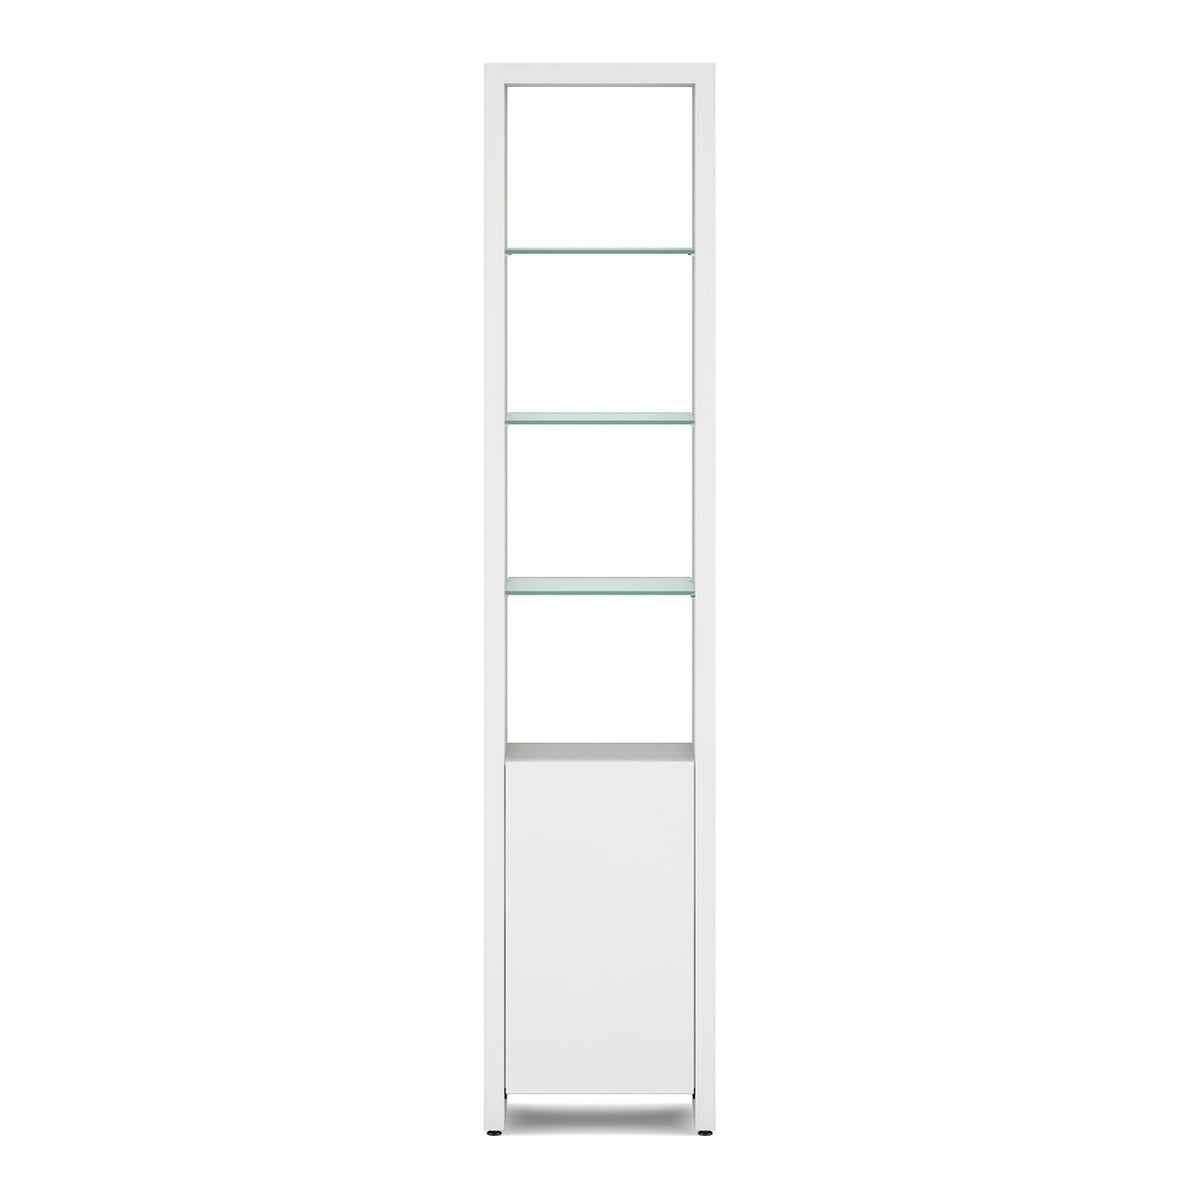 BDI Linea 5801 Single-Wide Cabinet (Satin White)